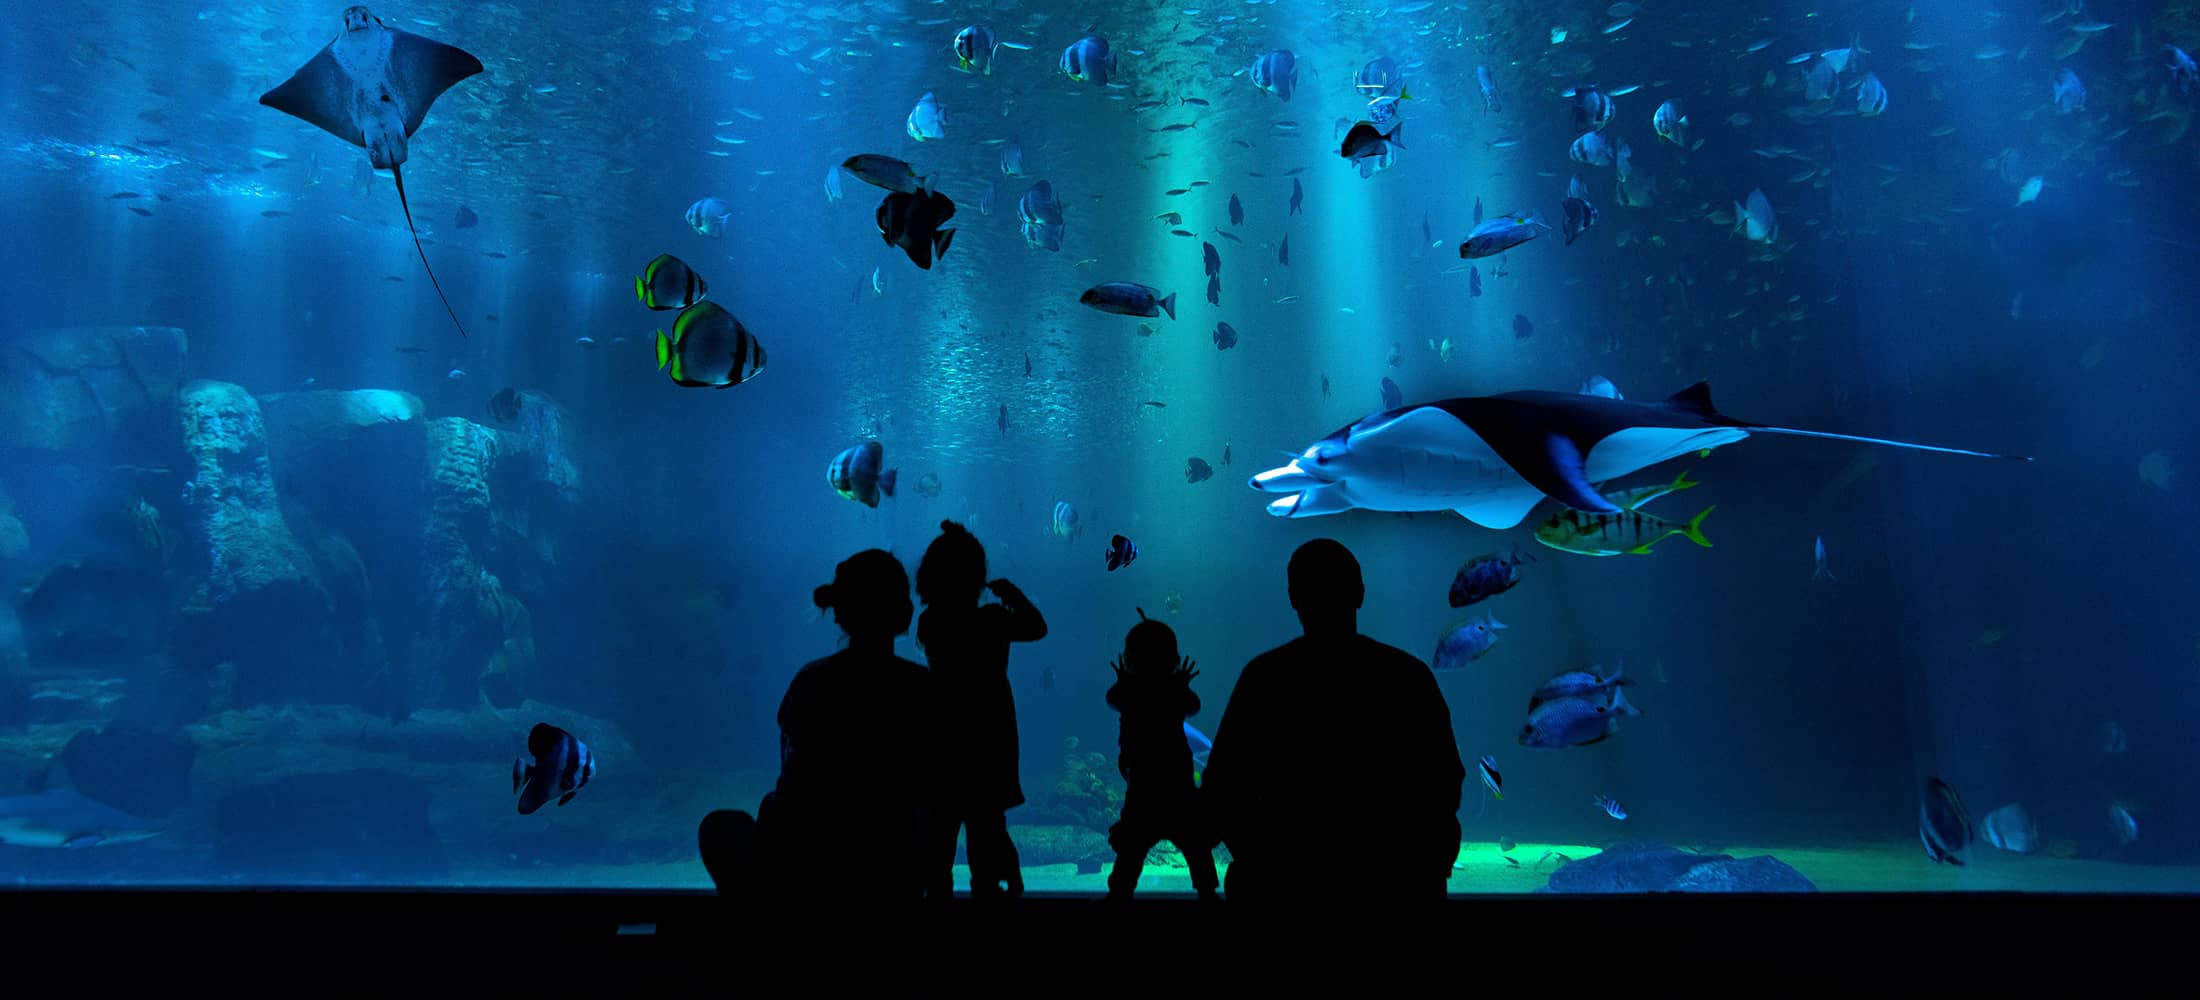 image of the Aquarium